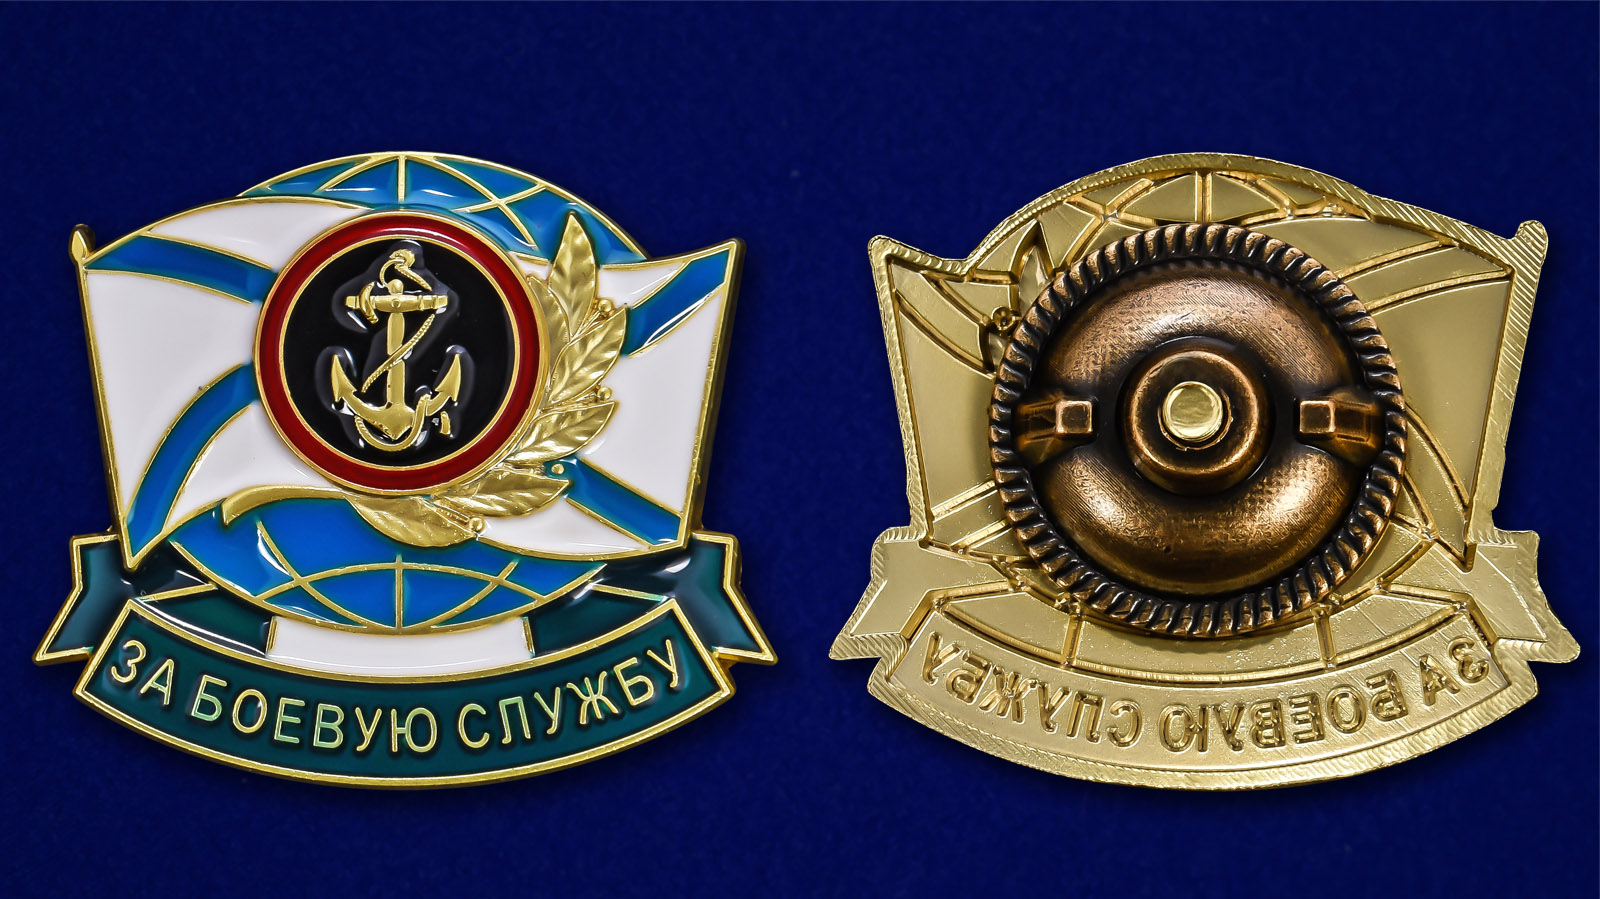 Описание нагрудного знака За боевую службу ВМФ Морская пехота 